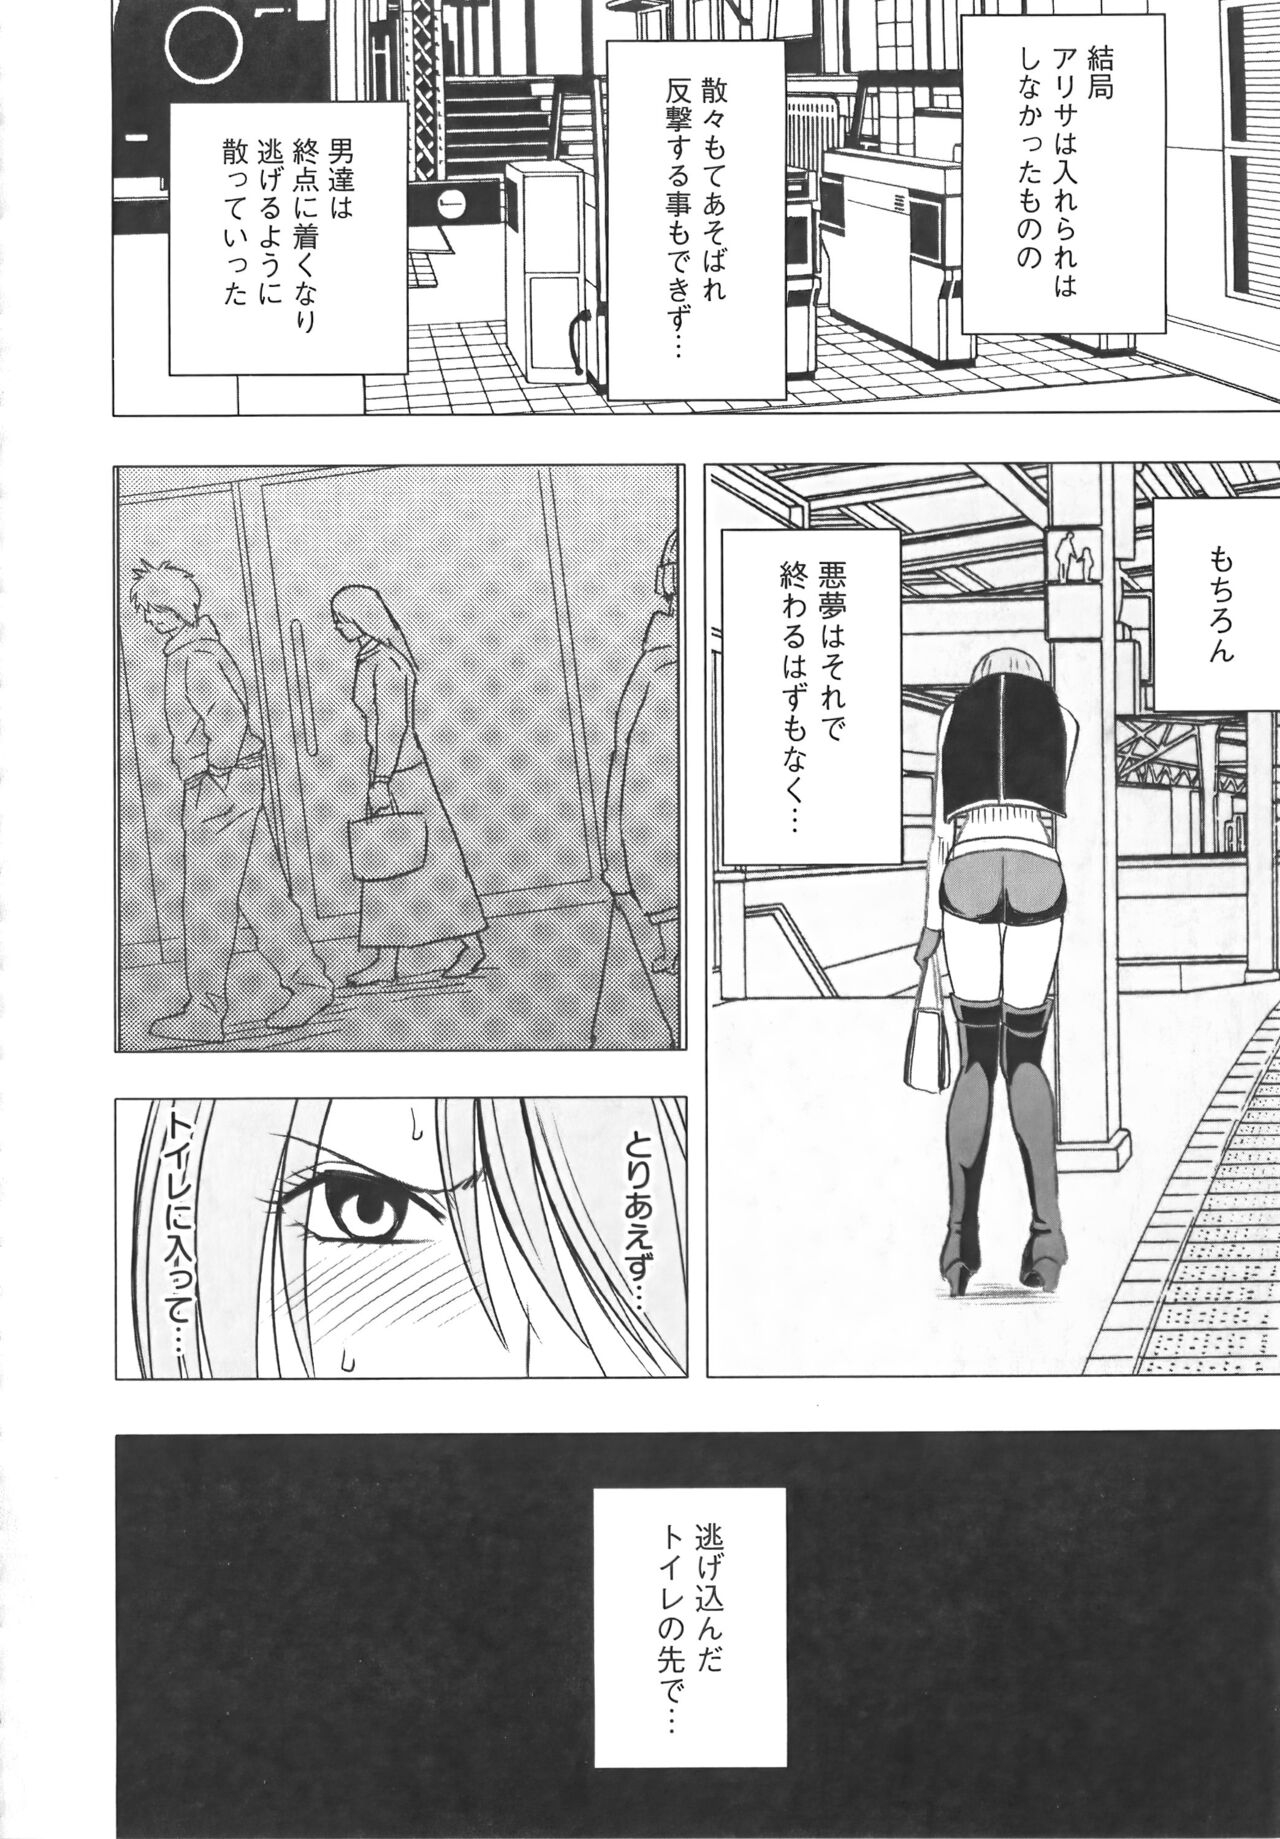 [Crimson] Idol Kyousei Sousa Vol.1 Smartphone de Meireishita Koto ga Genjitsu ni [Complete Edition] 209